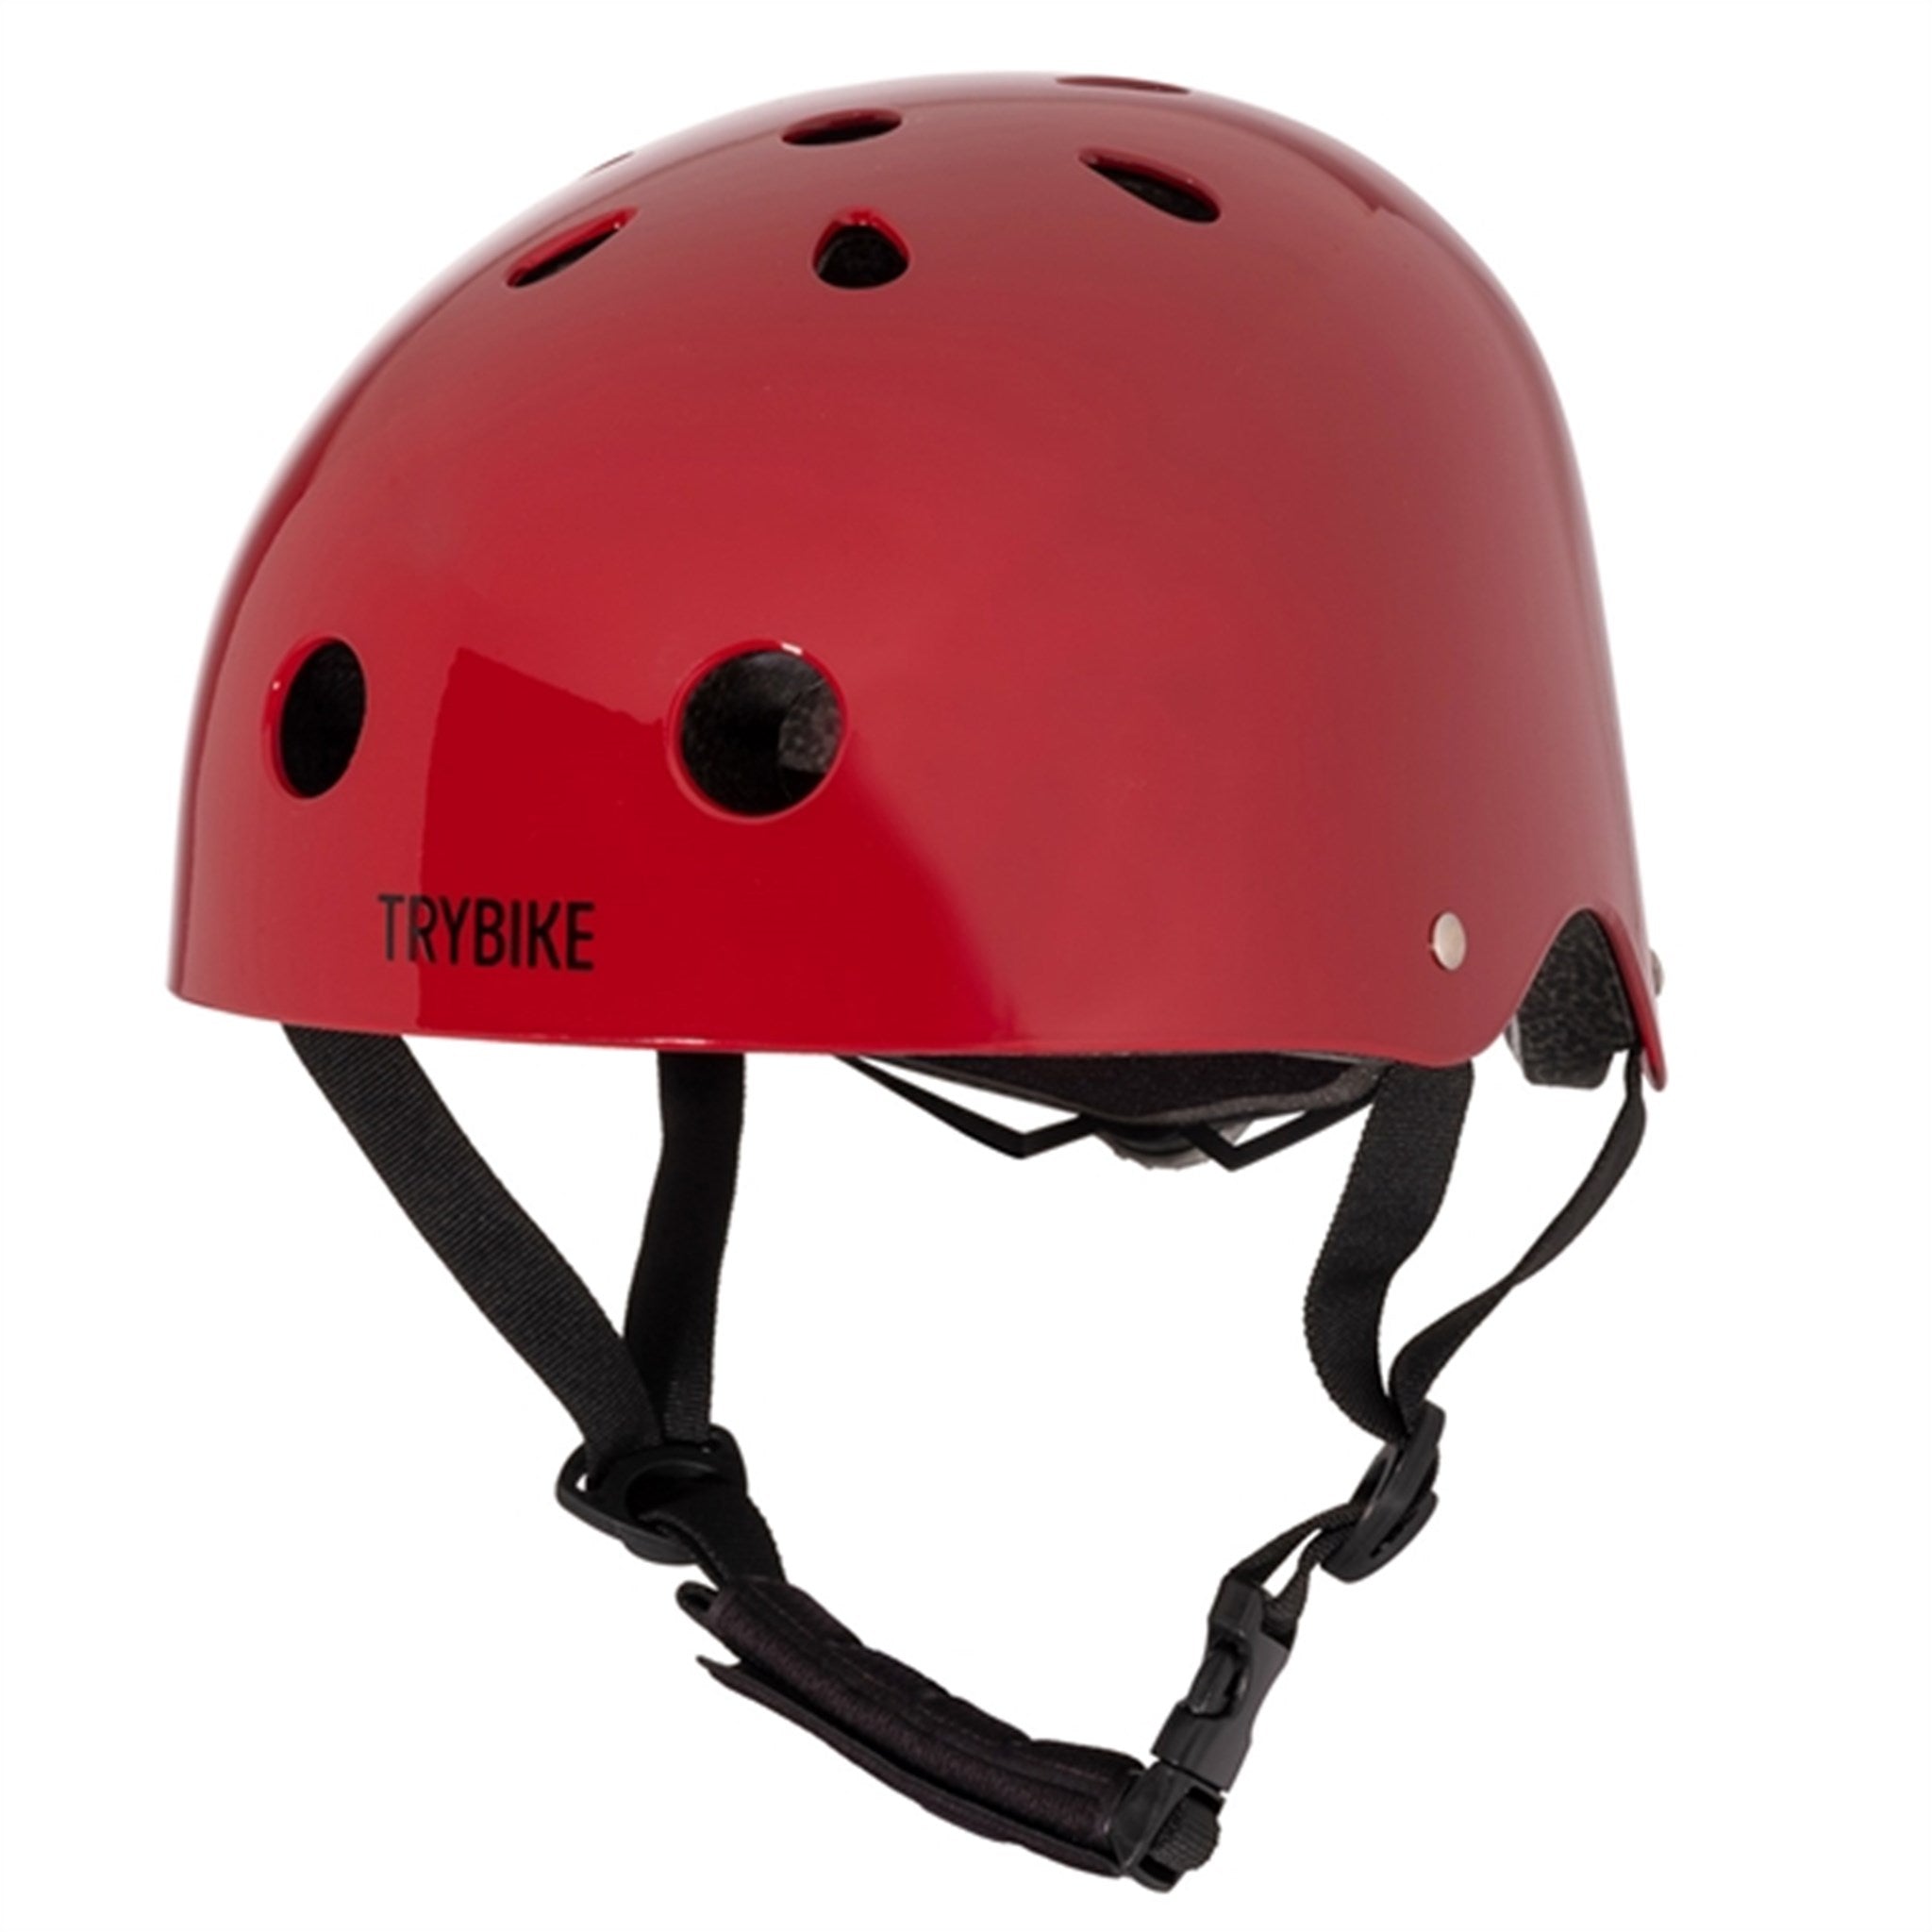 Trybike CoConut Ruby Red Helmet Retro Look